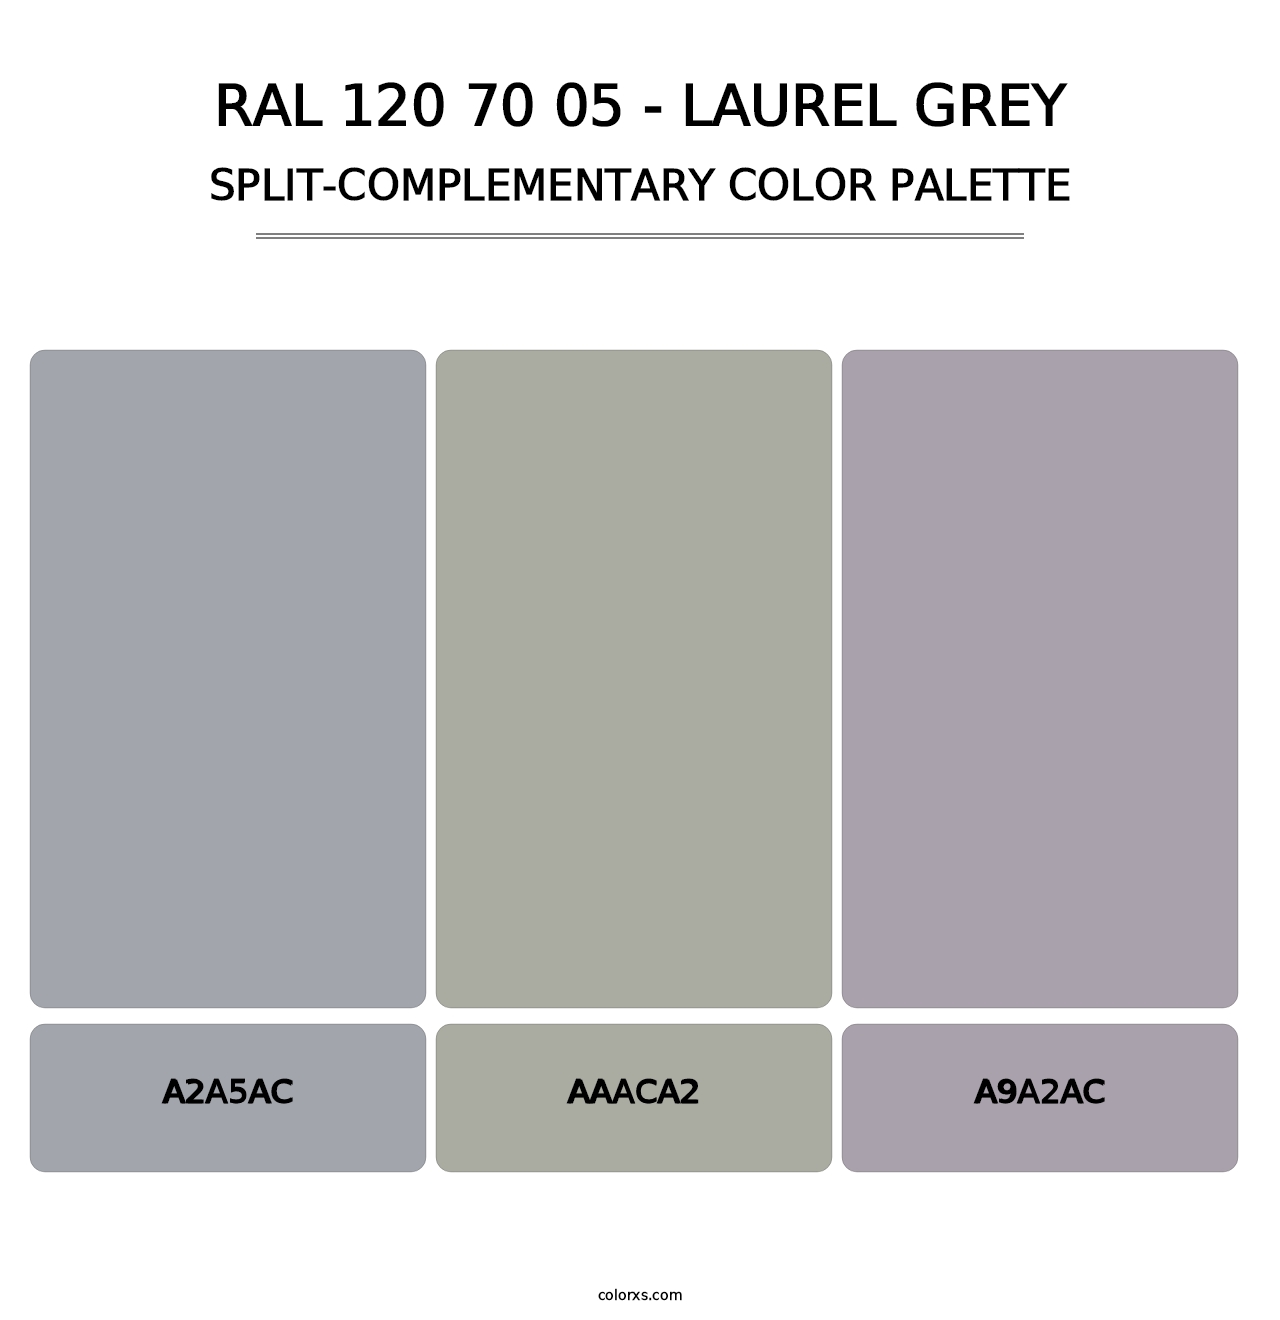 RAL 120 70 05 - Laurel Grey - Split-Complementary Color Palette